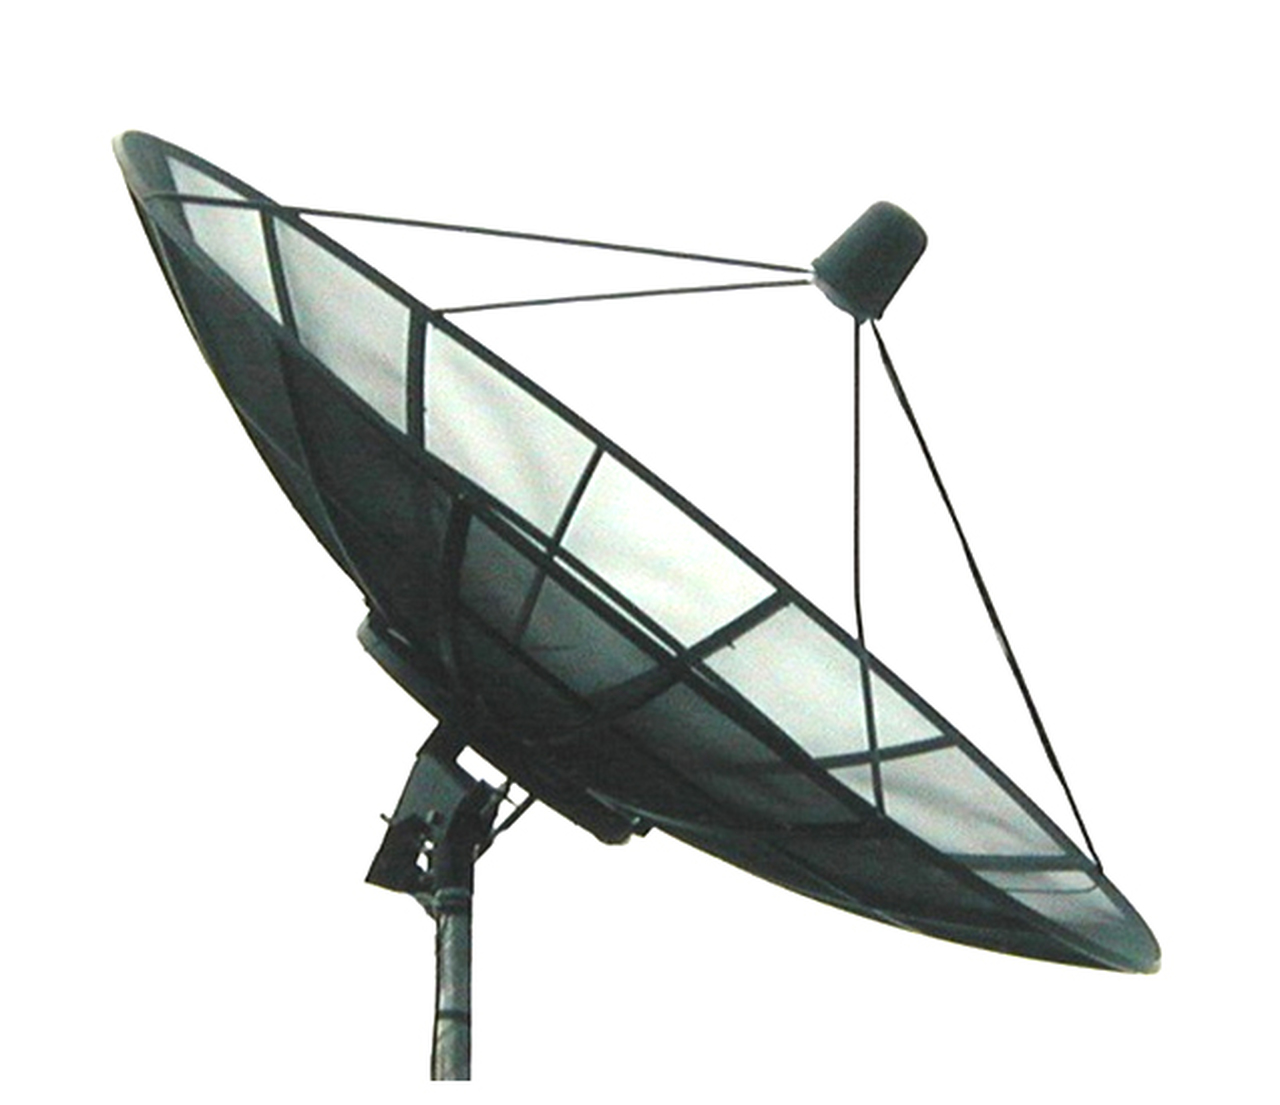 Melbourne Satellites